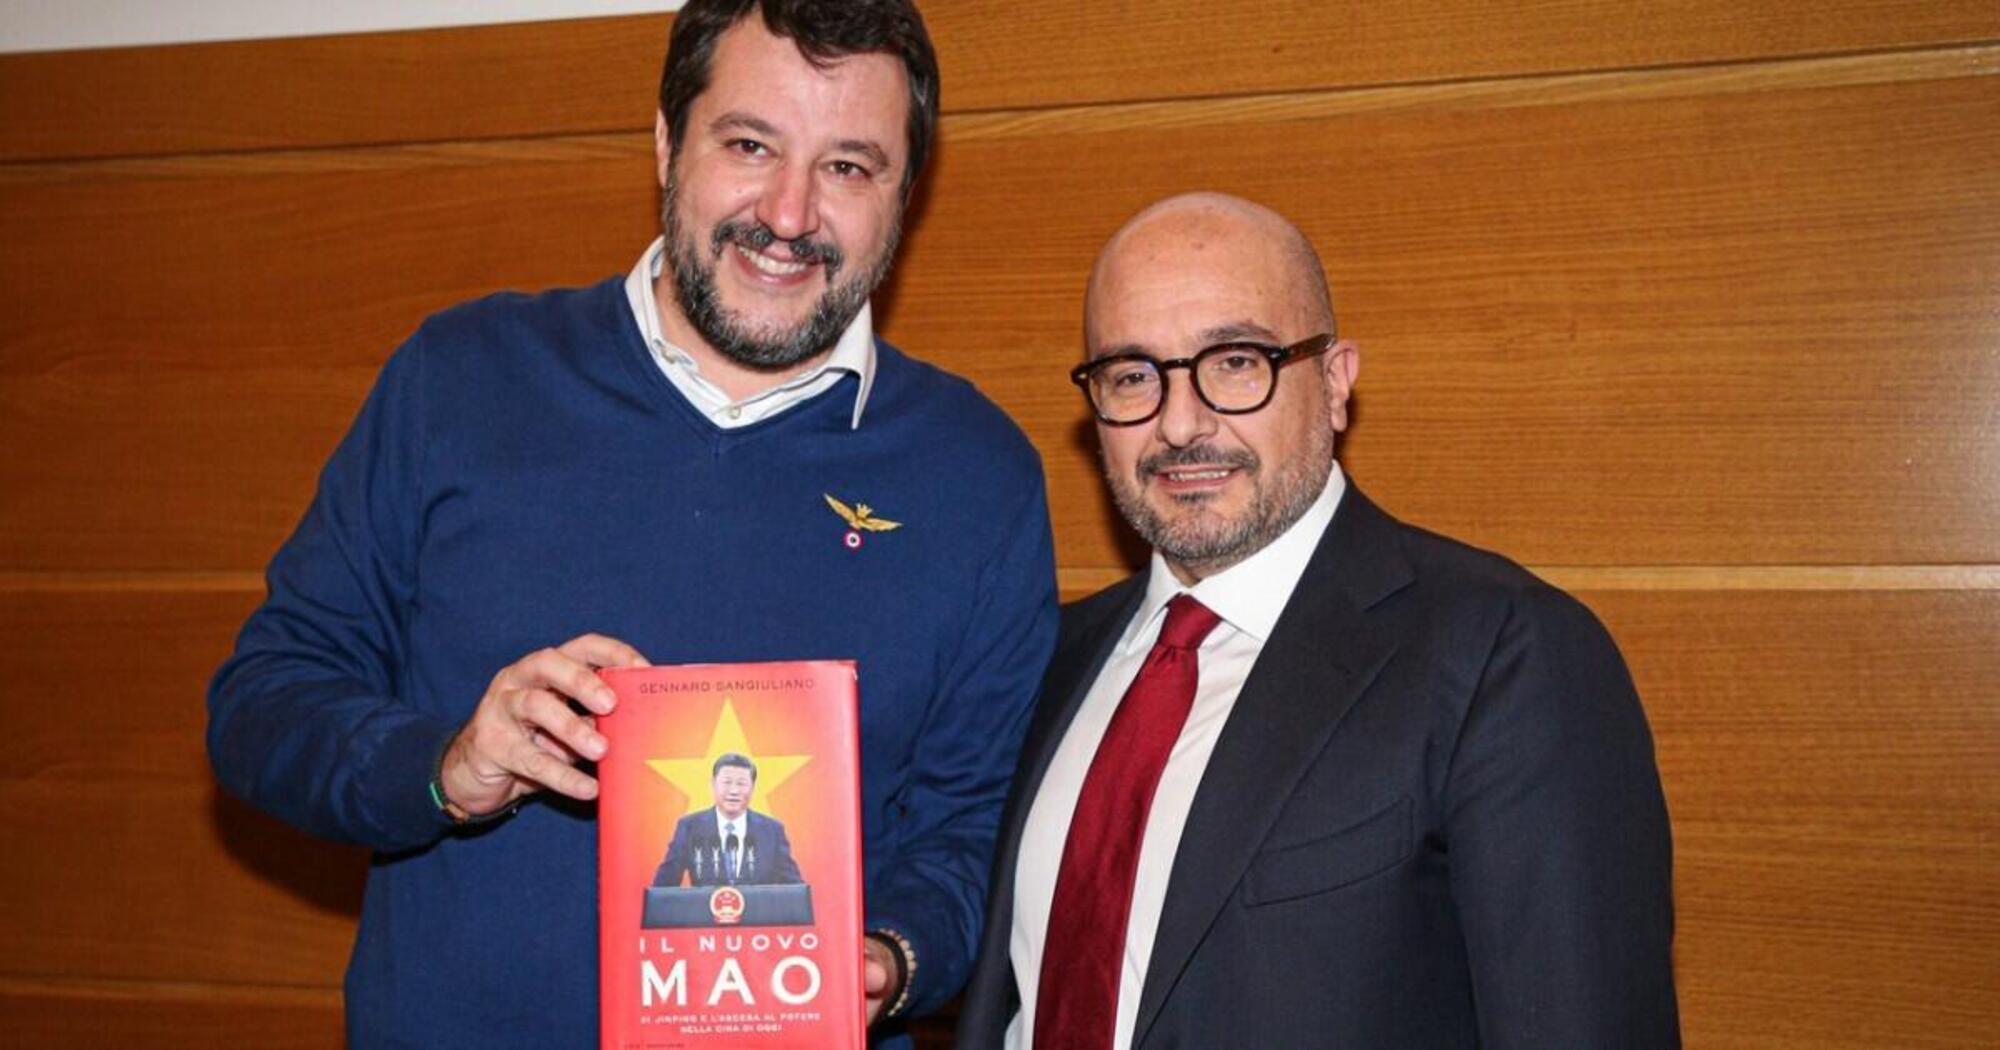 Gennaro Sangiuliano, Ministro della cultura del governo Meloni, con Matteo Salvini